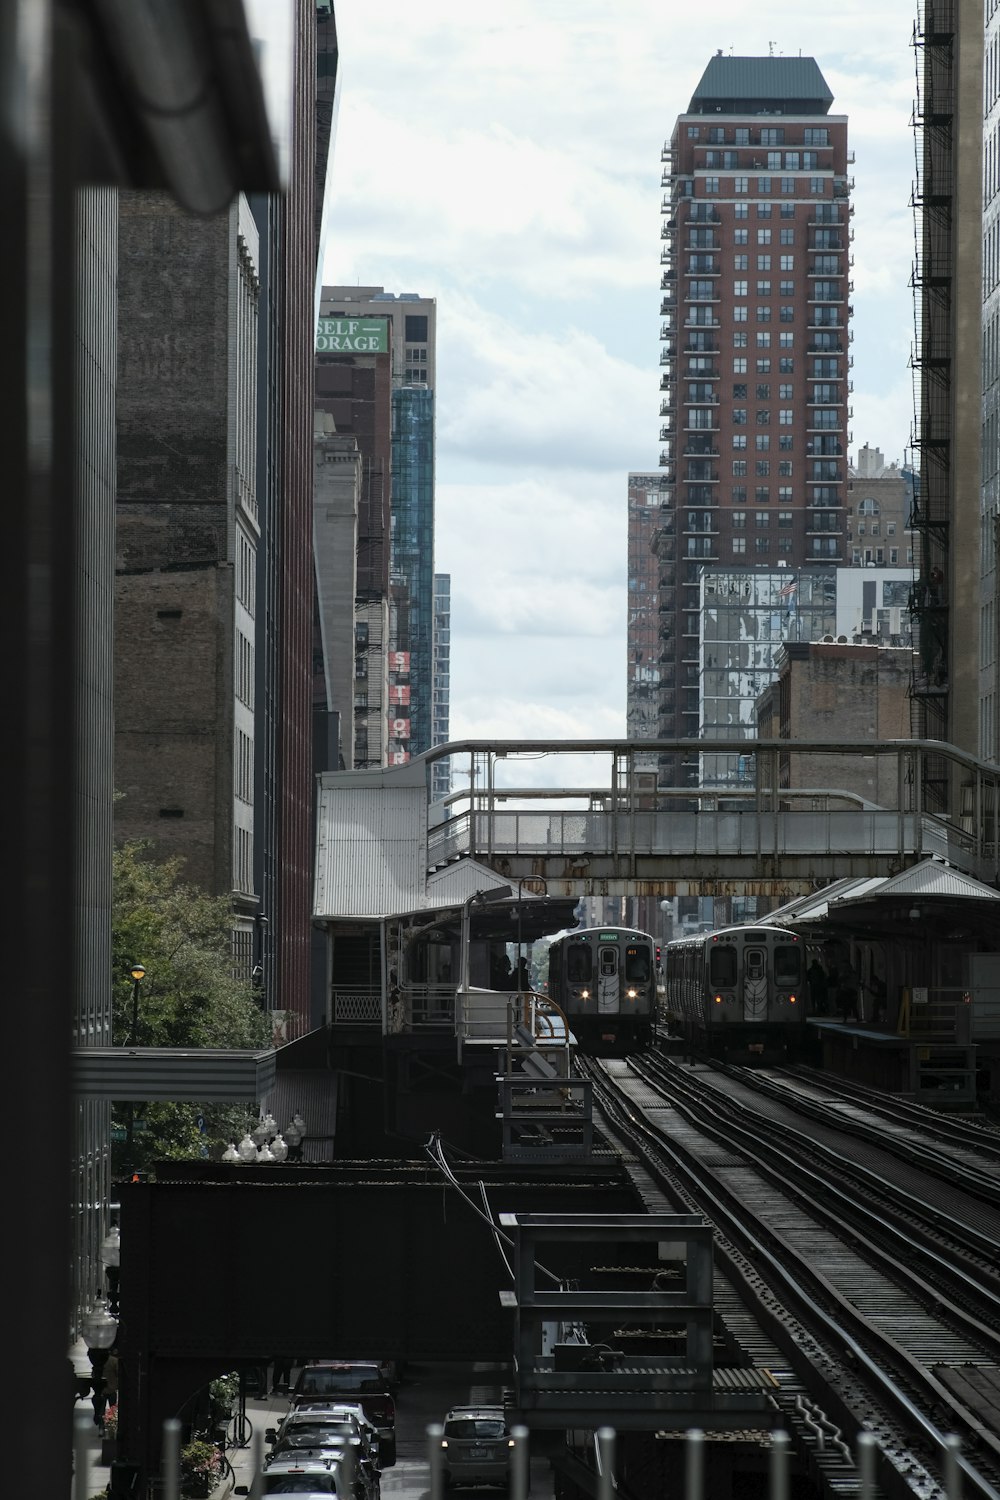 Train brun sur rail près d’un immeuble de grande hauteur pendant la journée